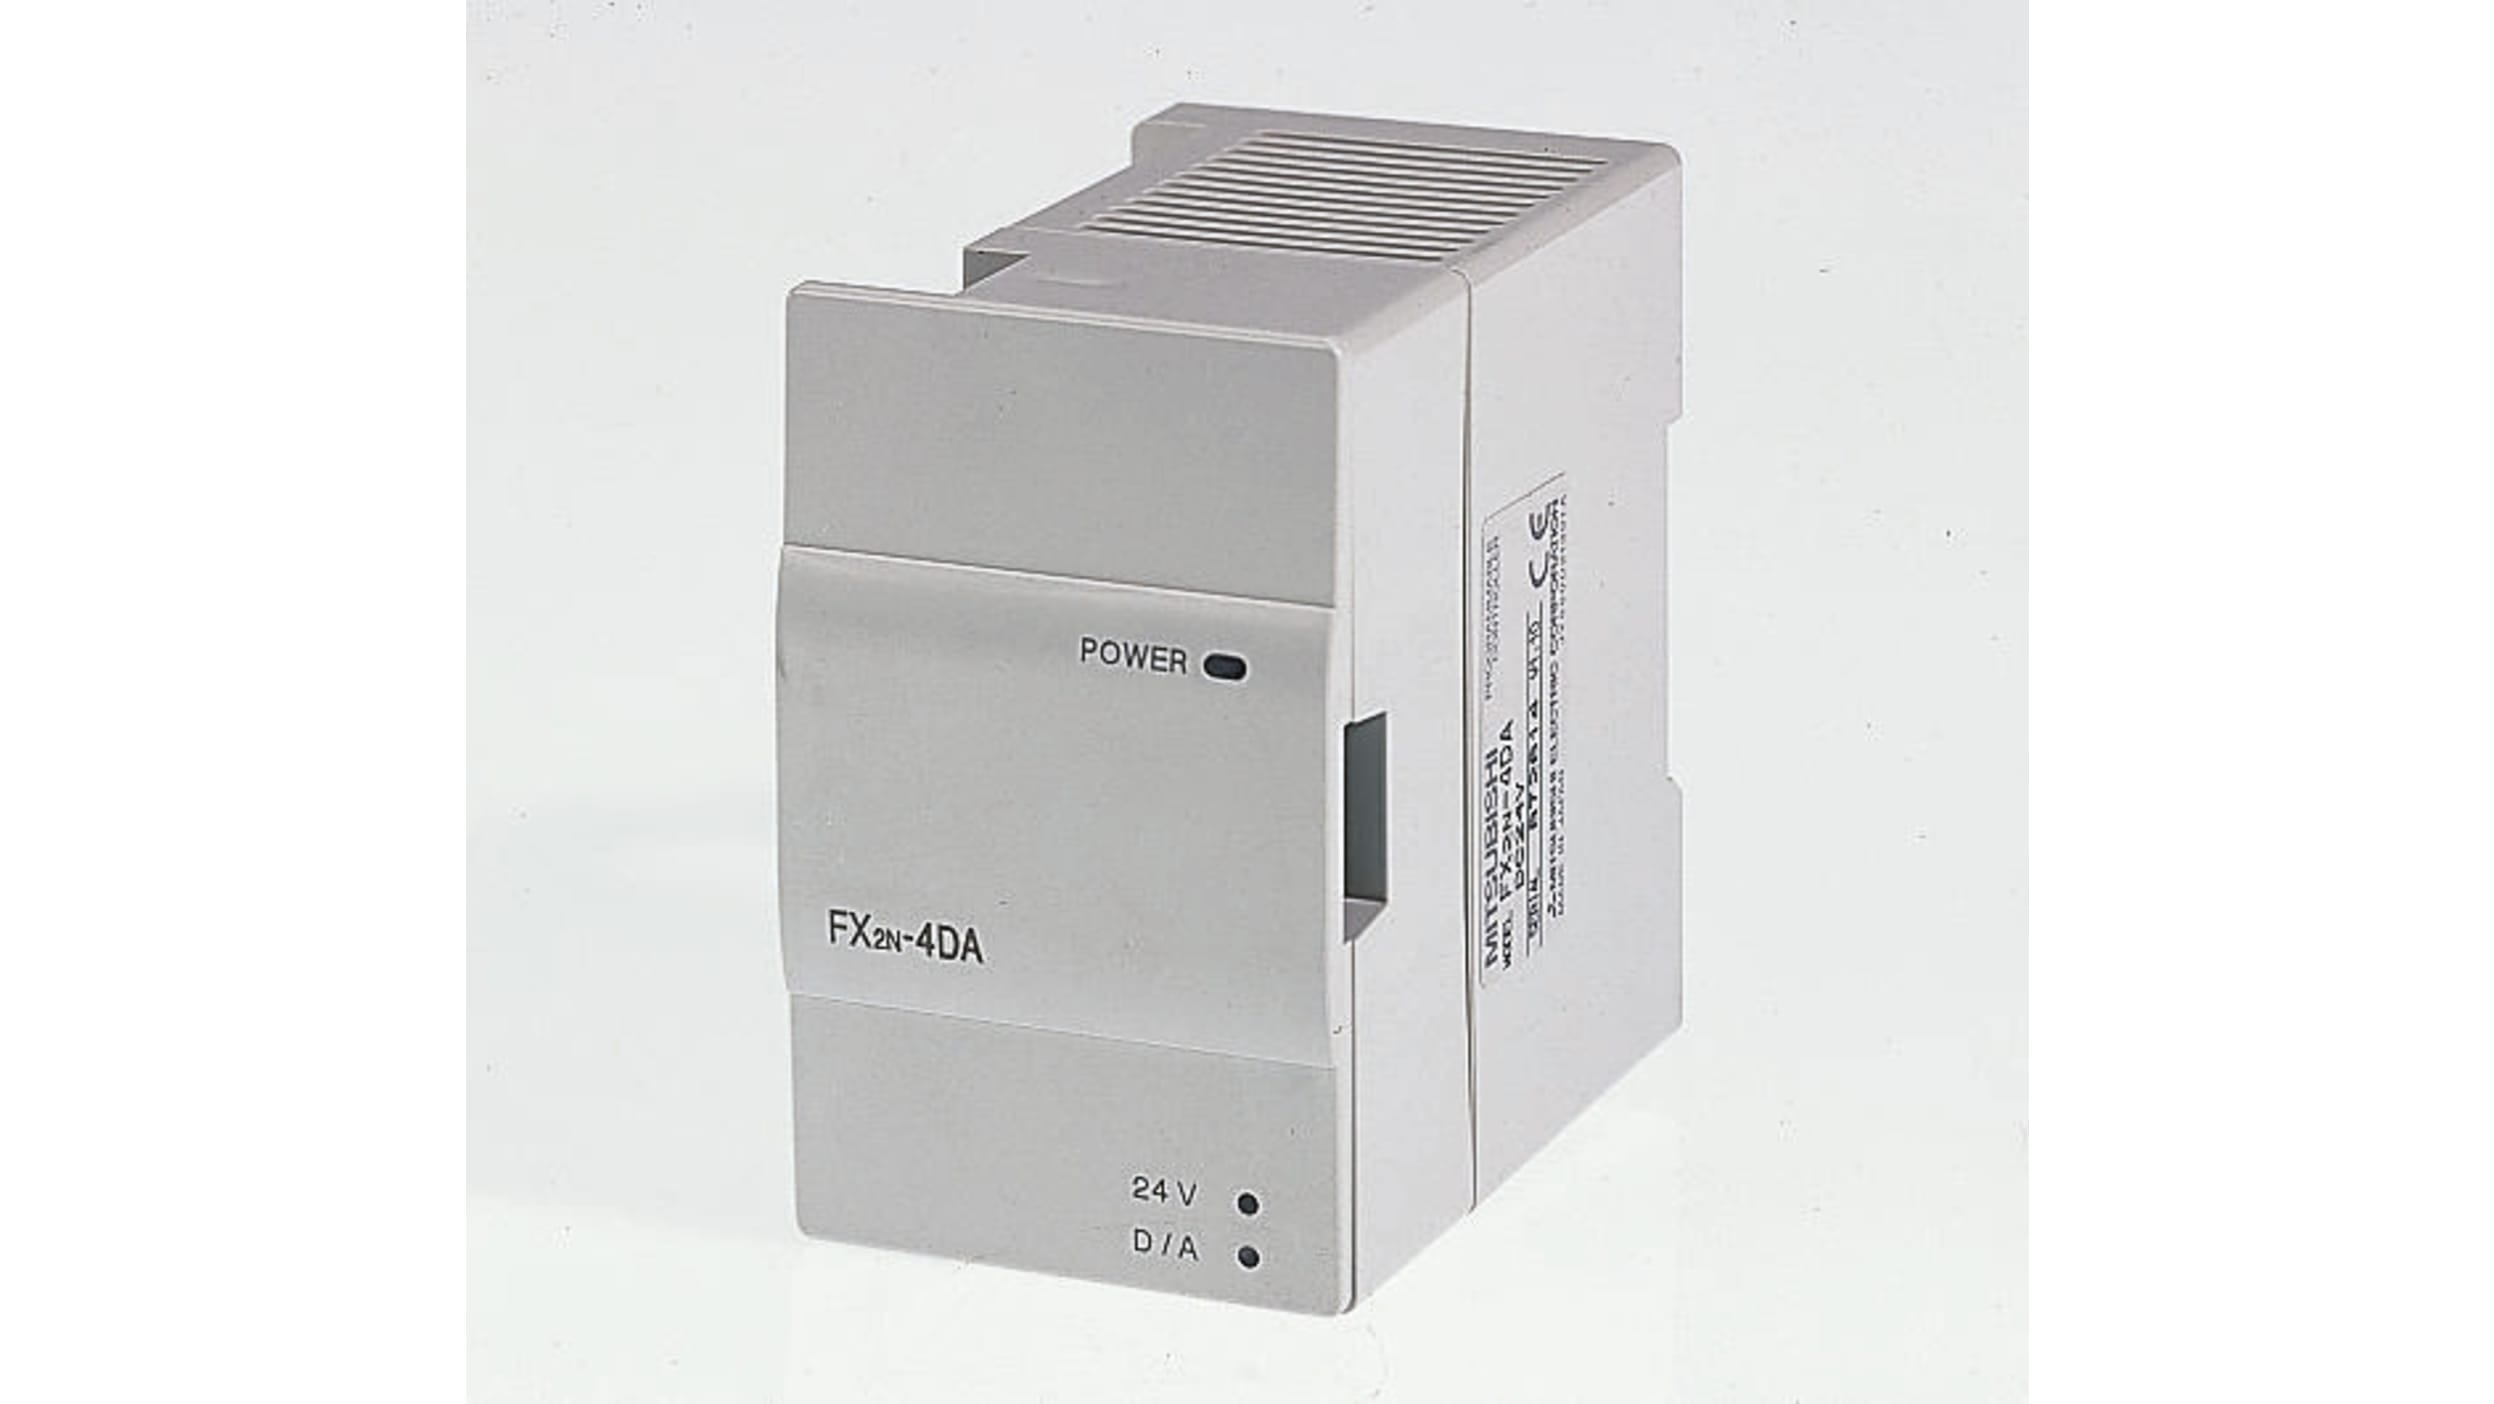 業界アナログ入力ブロック FX2N-2AD PLC拡張モジュール - 2